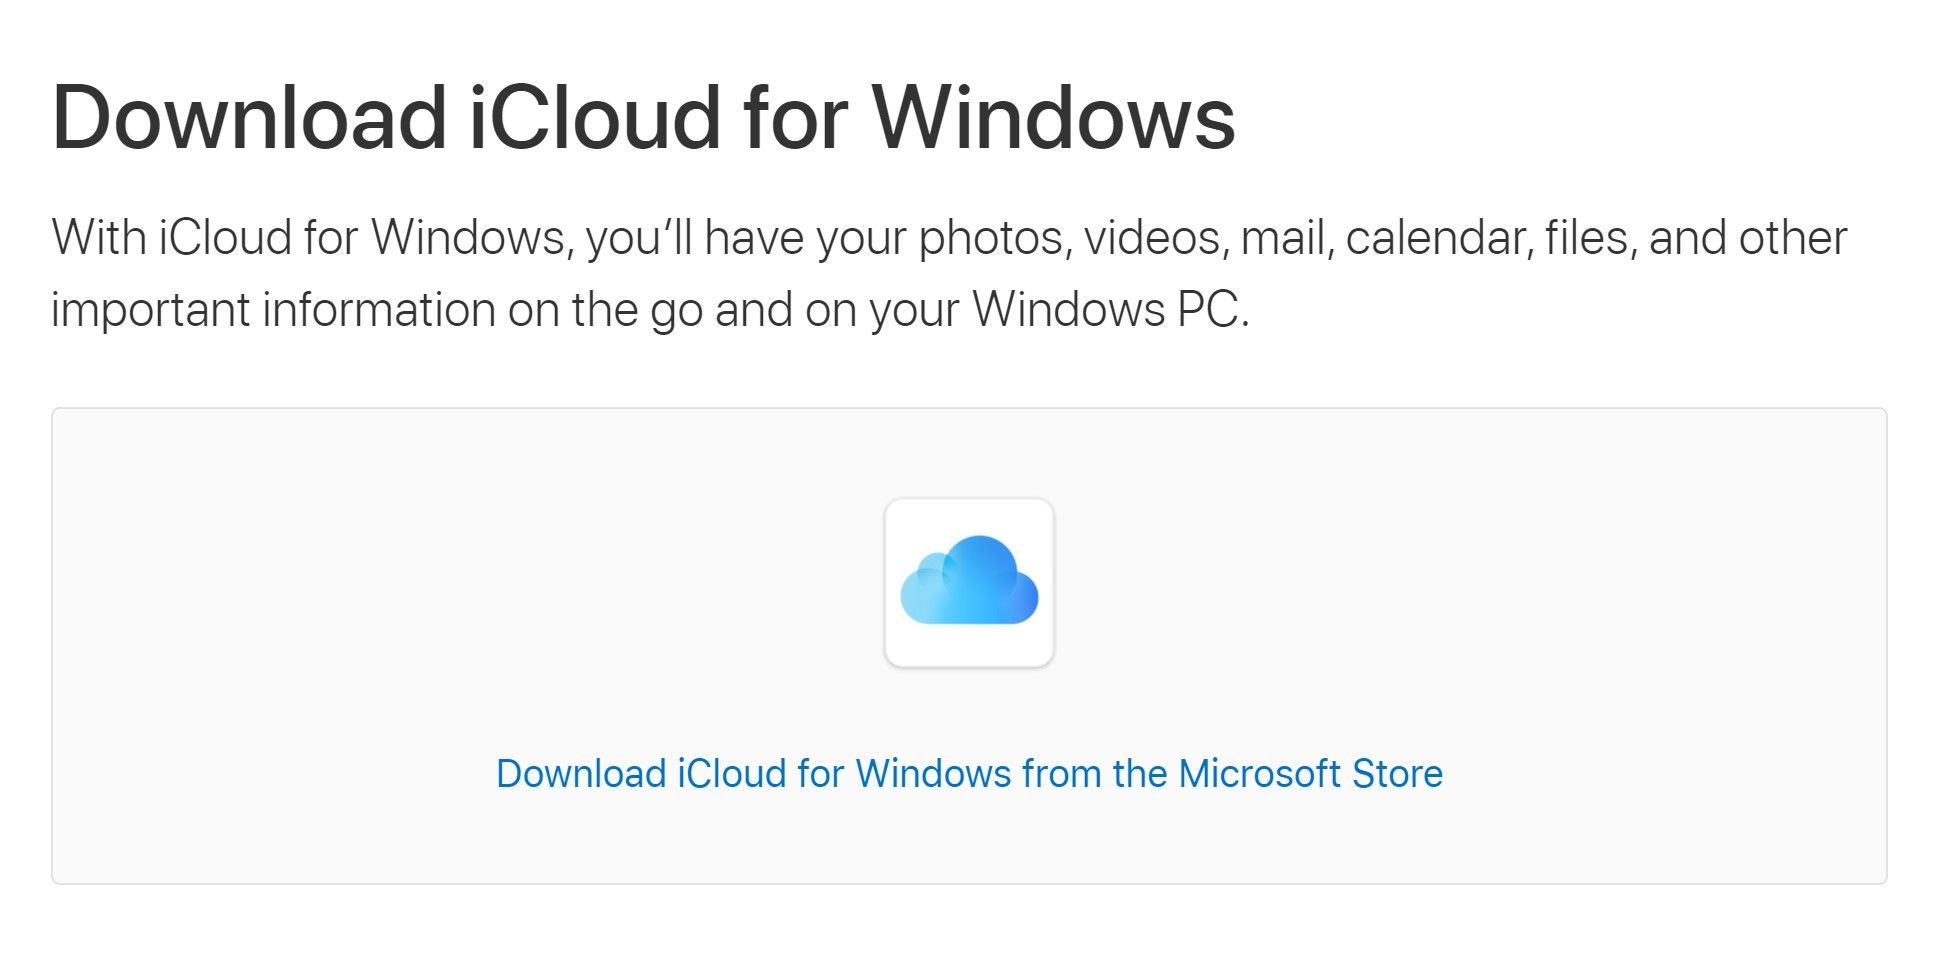 iCloud desktop app download option